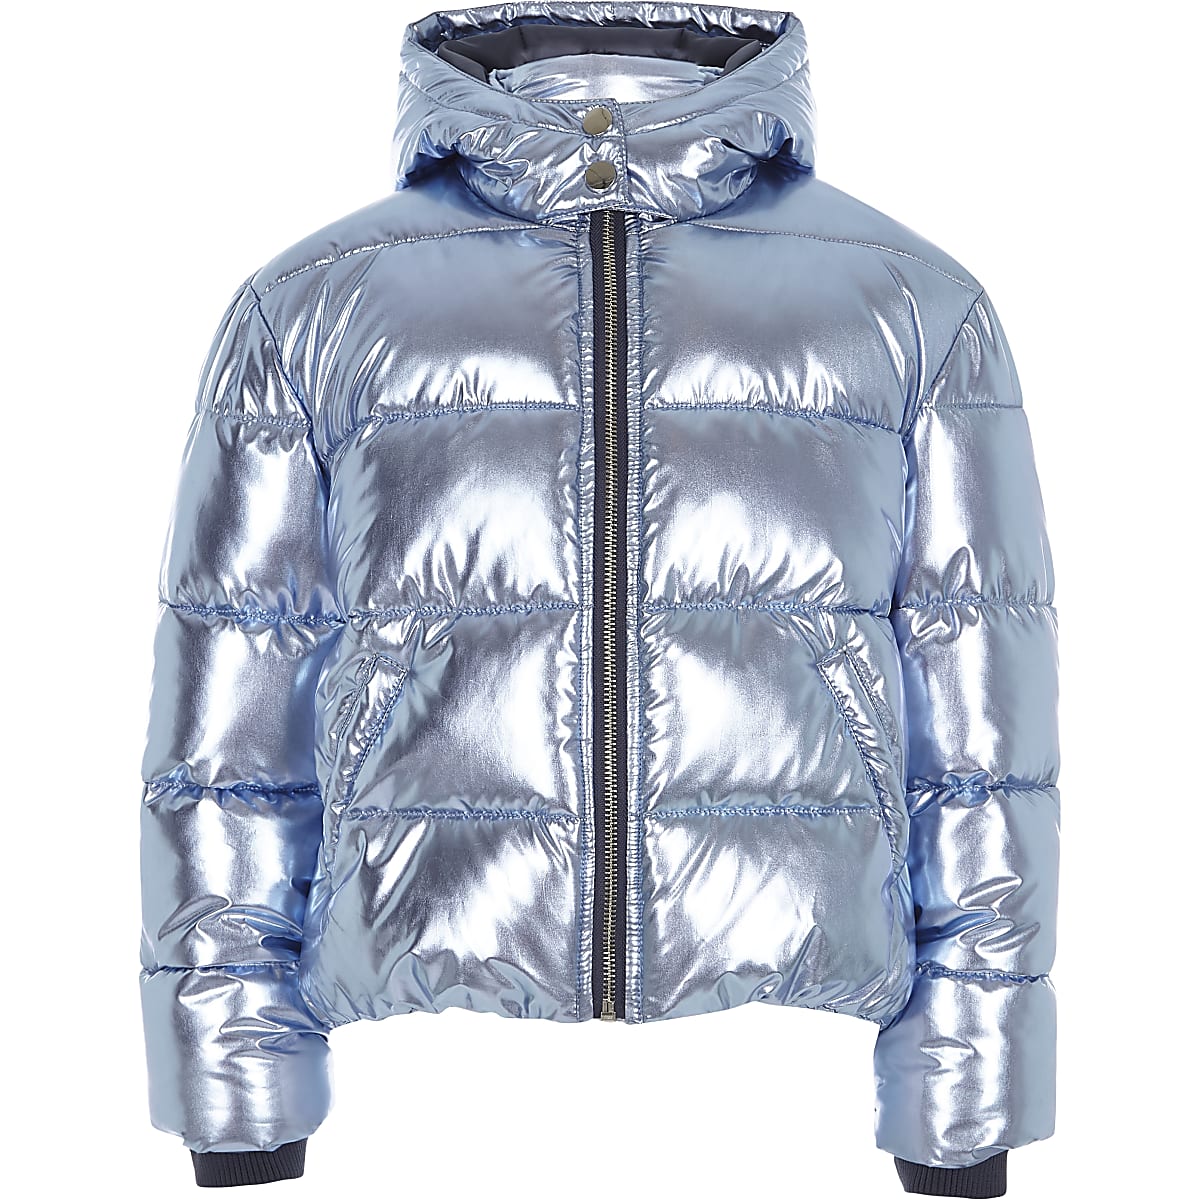 Girls blue foil hooded puffer jacket - Jackets - Coats & Jackets - girls